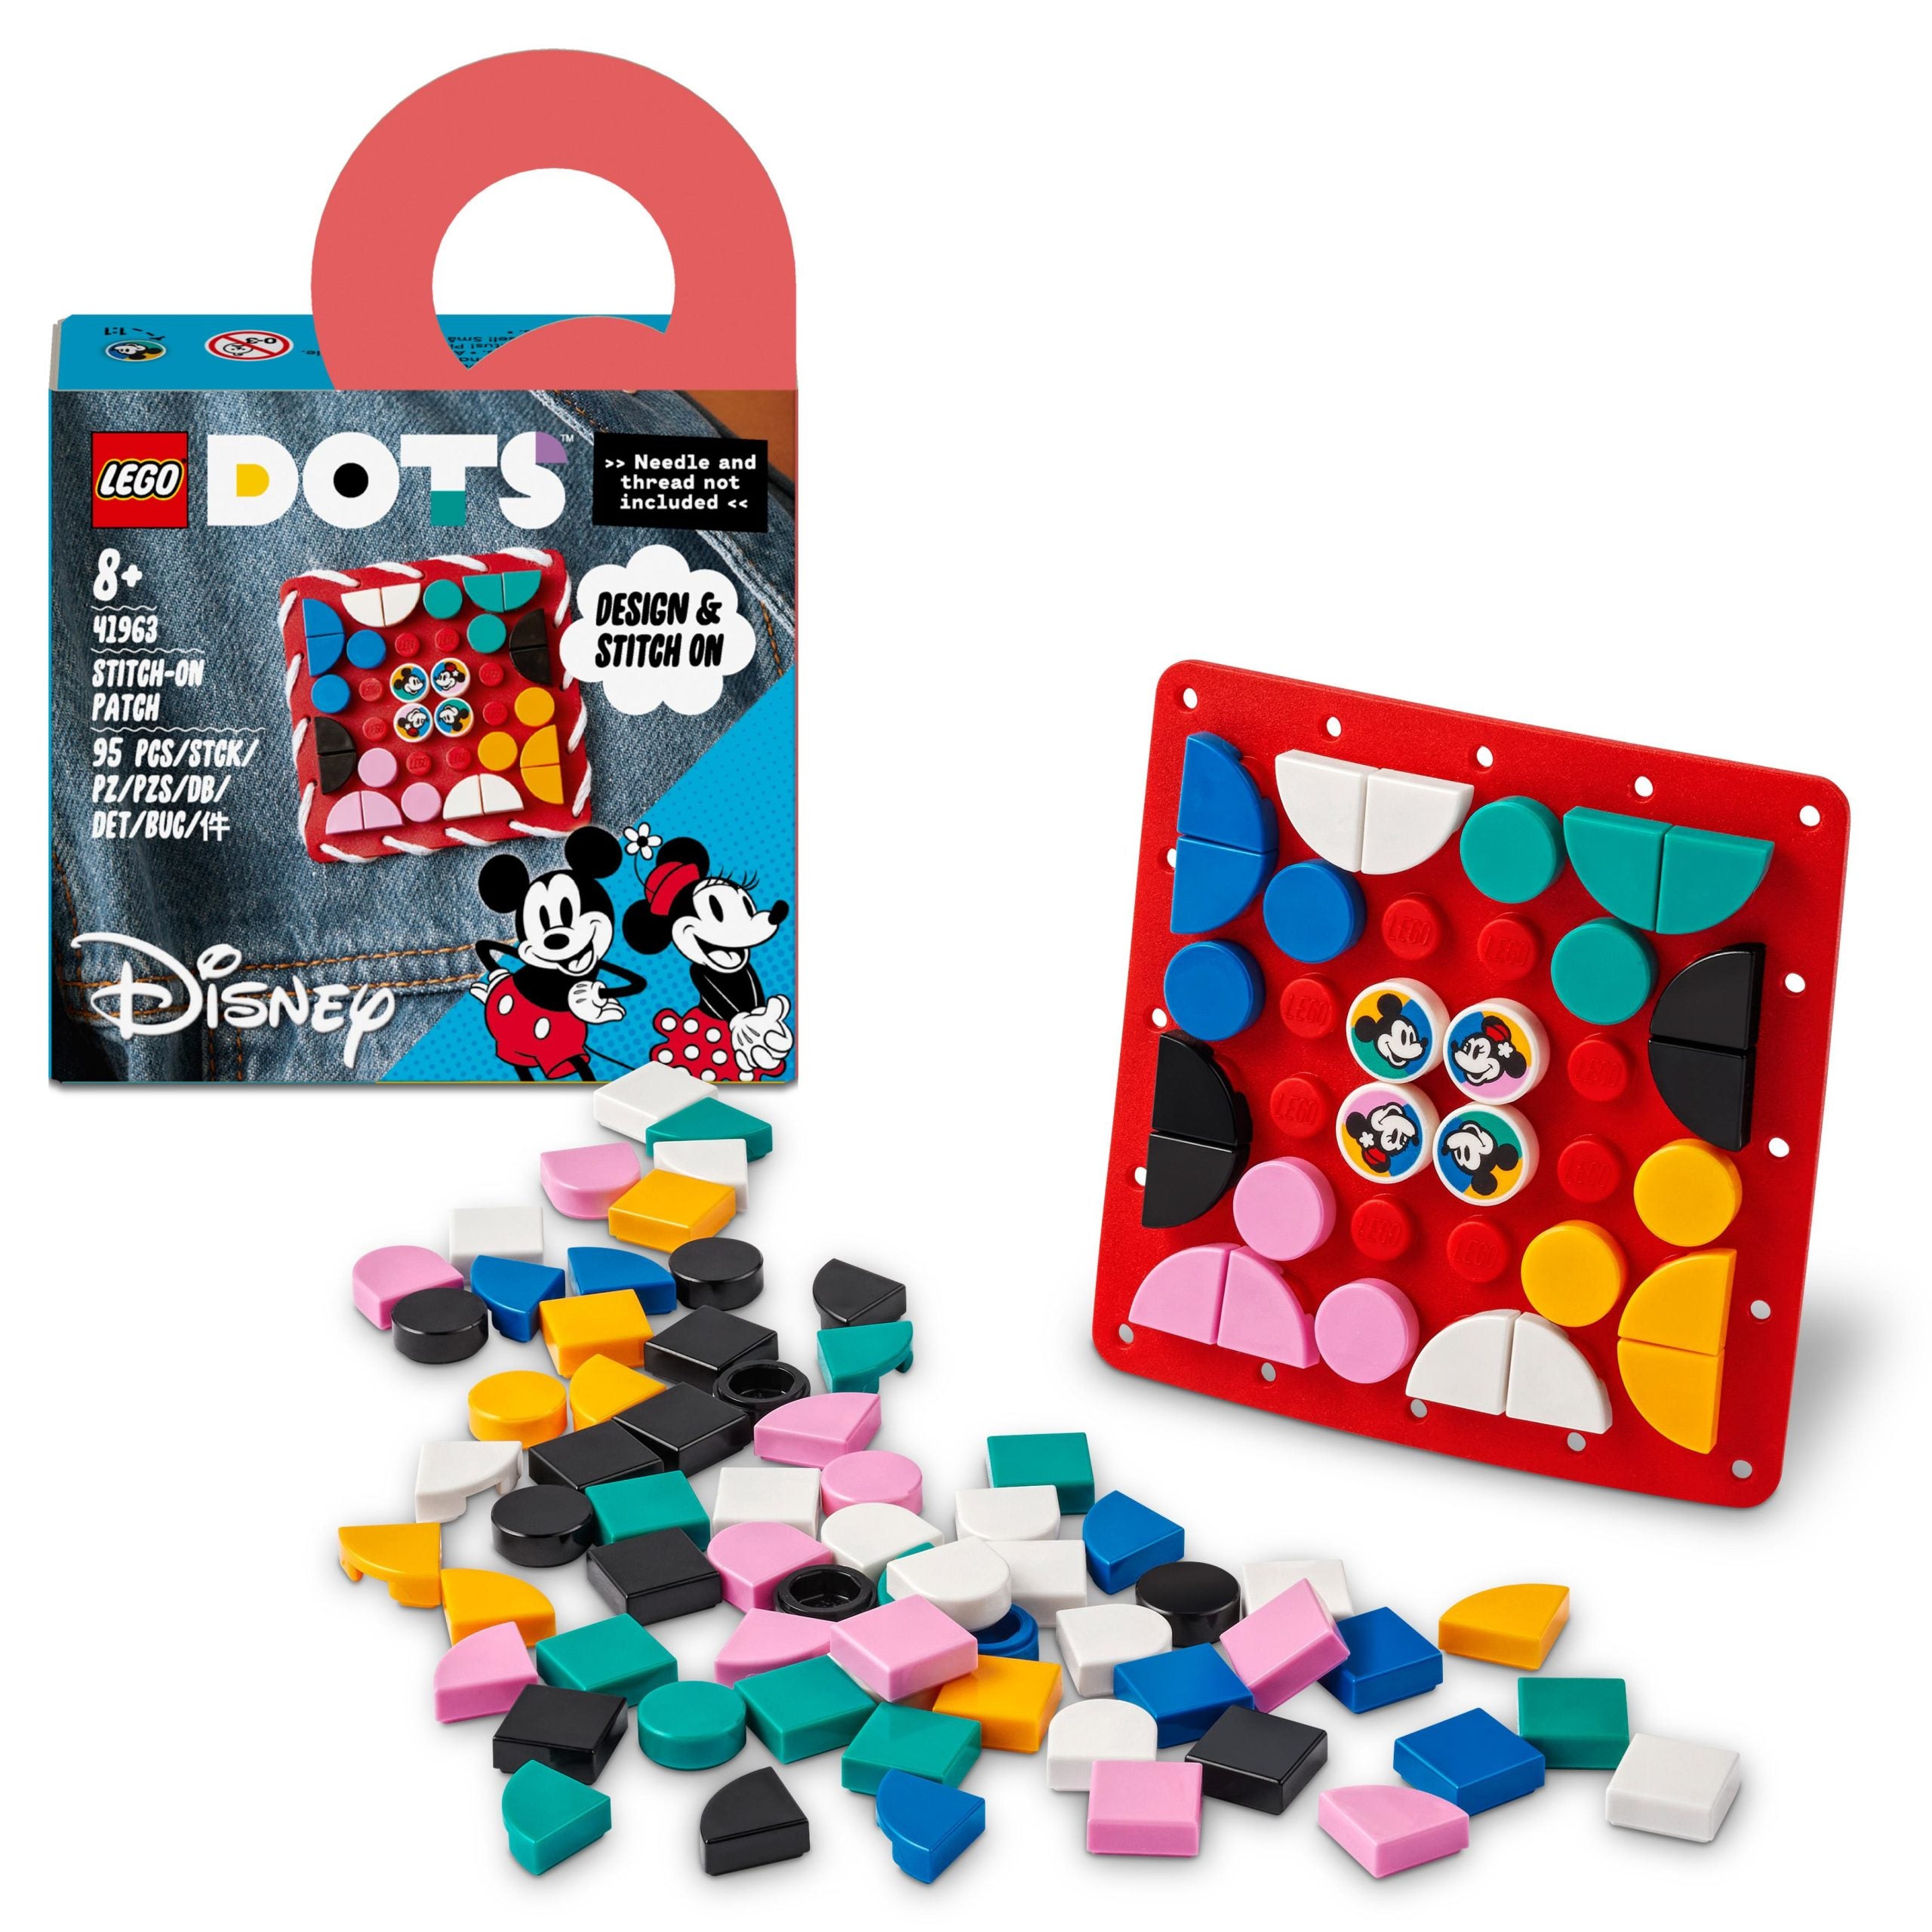 41963 LEGO® Disney - Patch stitch-on Topolino e Minnie